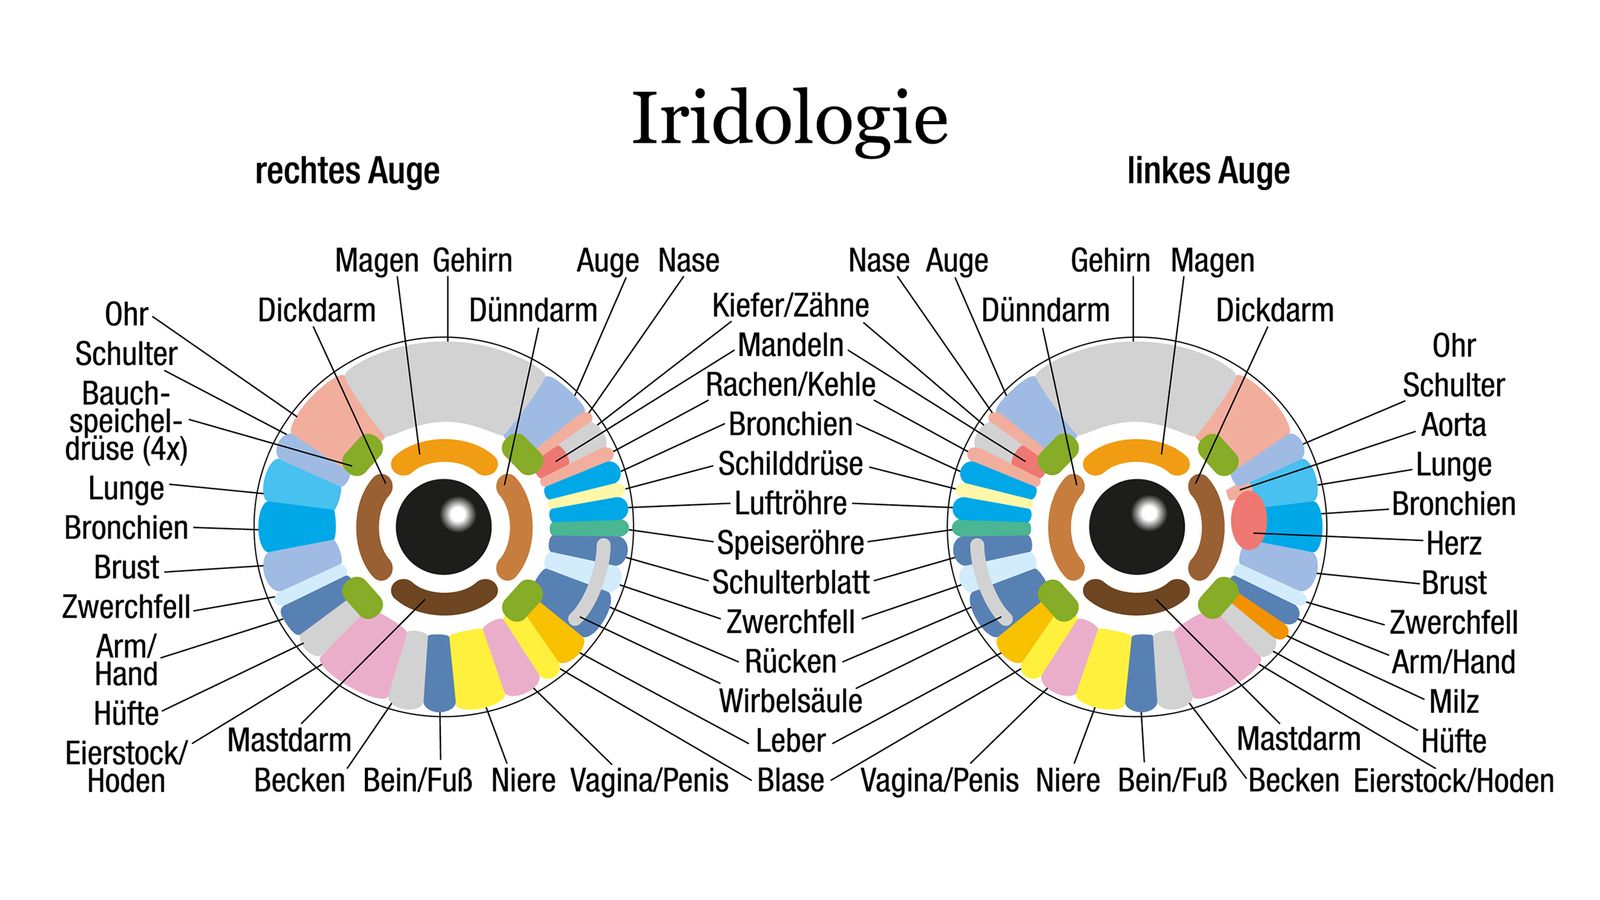 Das Iridologie-Schema